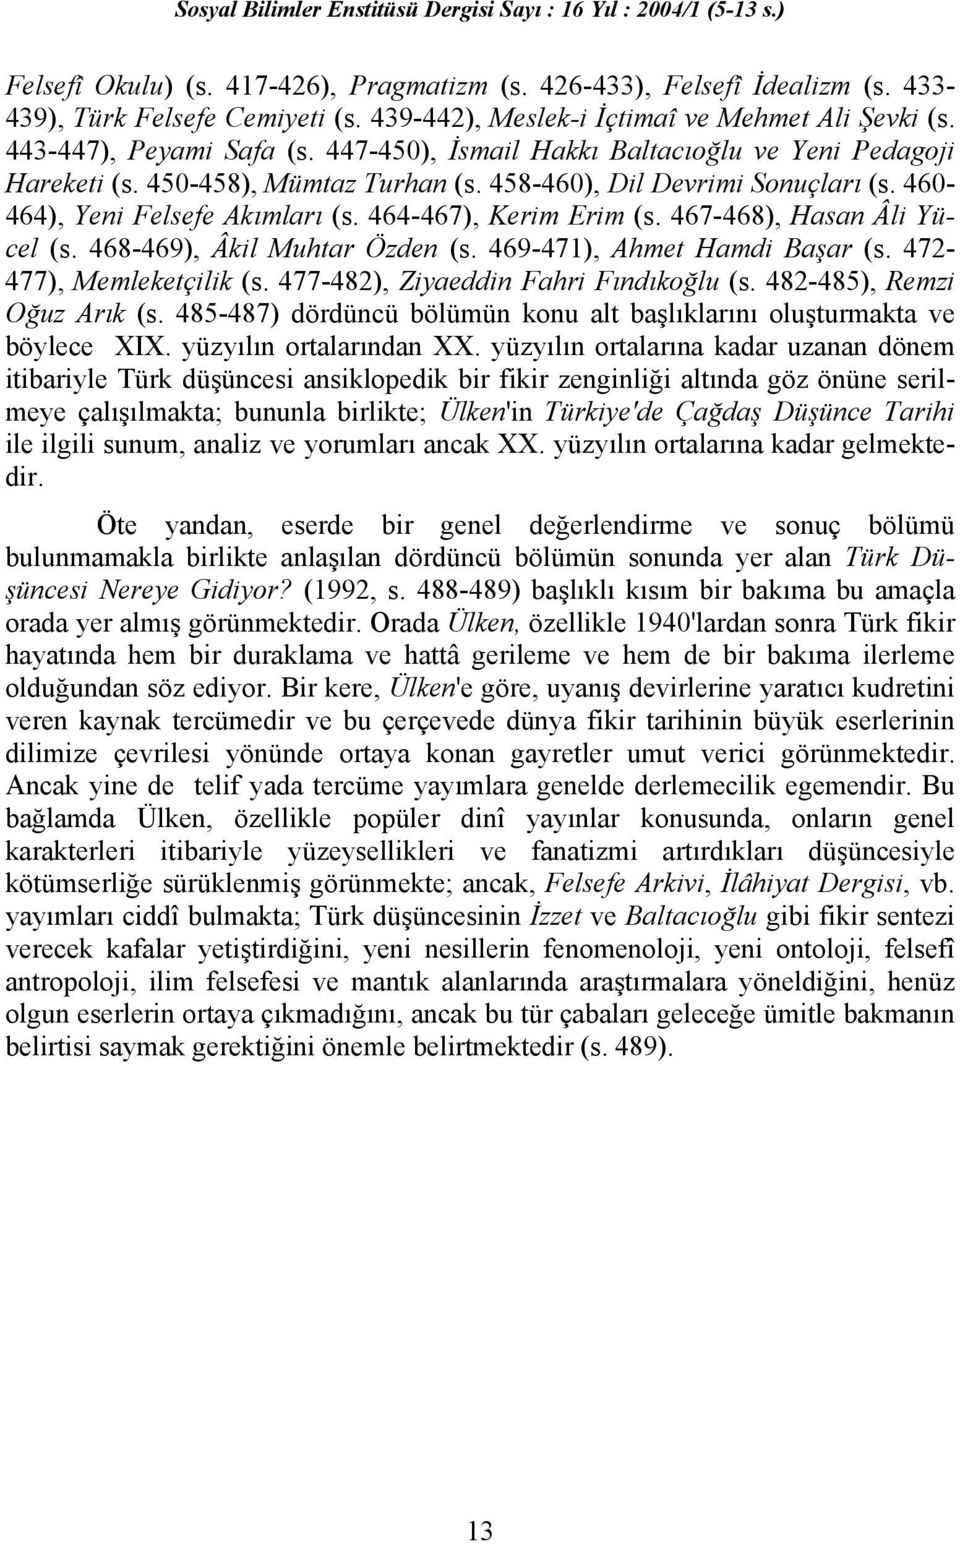 467-468), Hasan Âli Yücel (s. 468-469), Âkil Muhtar Özden (s. 469-471), Ahmet Hamdi Başar (s. 472-477), Memleketçilik (s. 477-482), Ziyaeddin Fahri Fındıkoğlu (s. 482-485), Remzi Oğuz Arık (s.